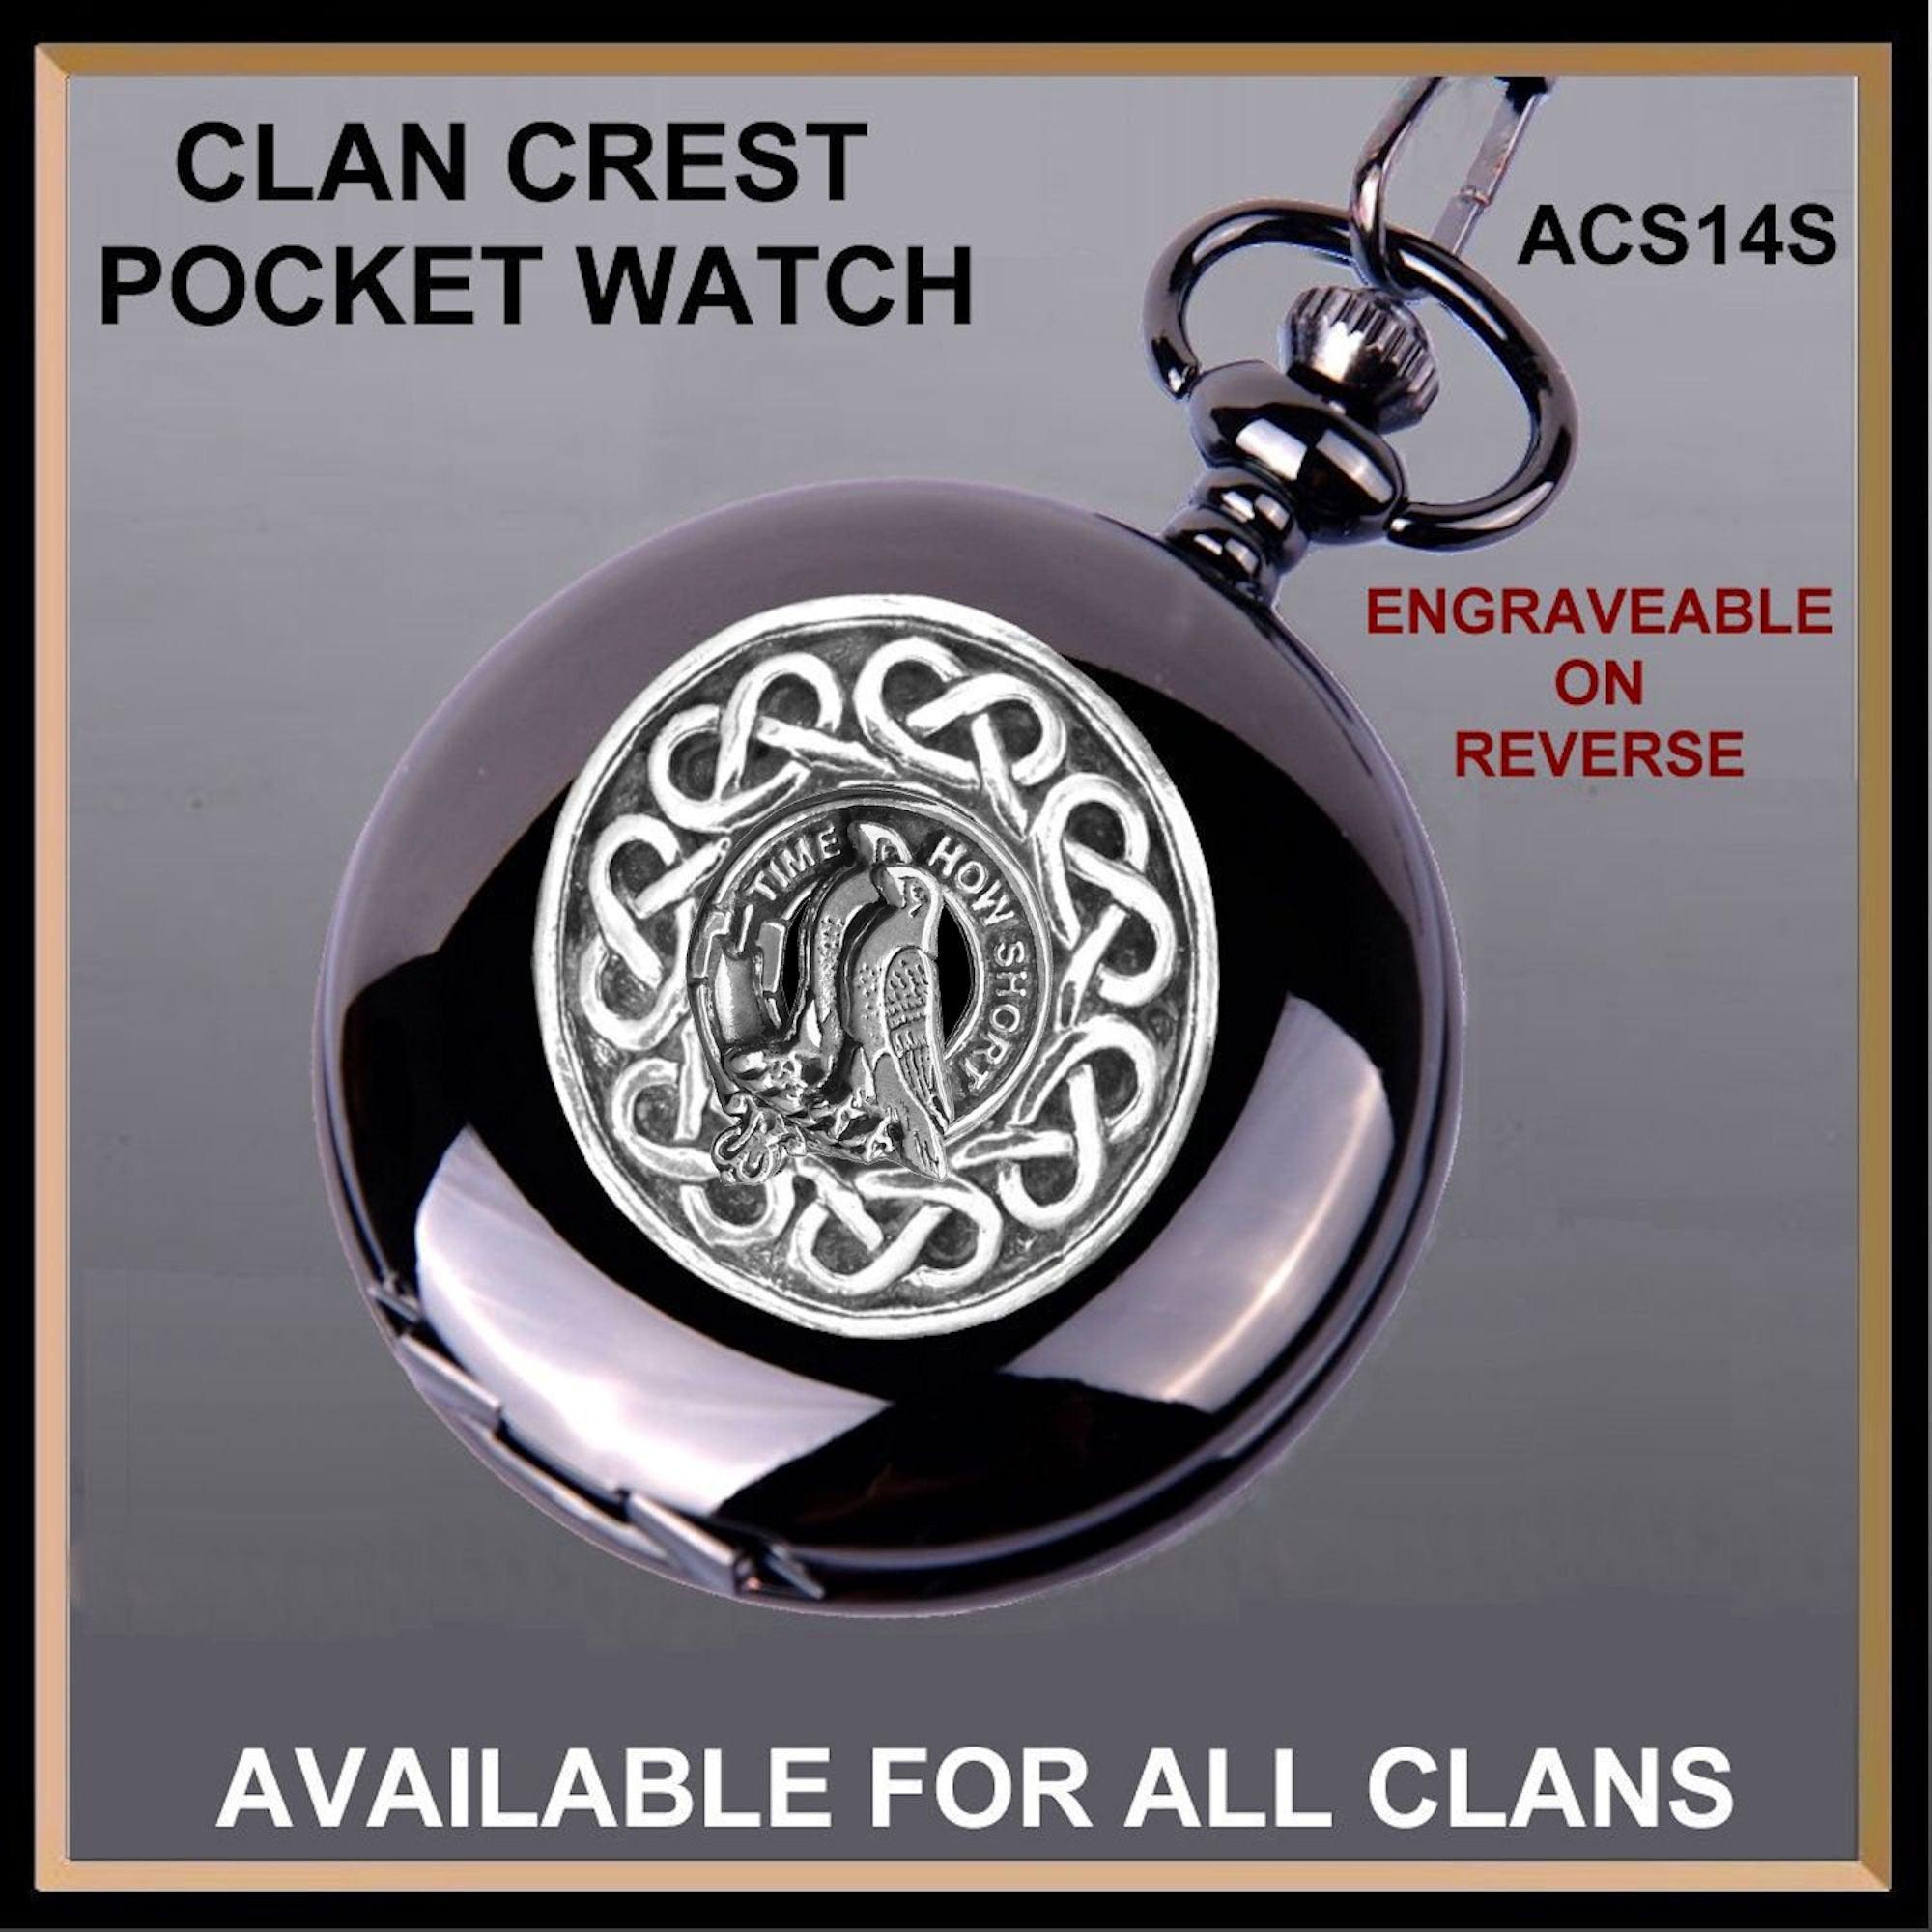 Akins Scottish Clan Crest Pocket Watch